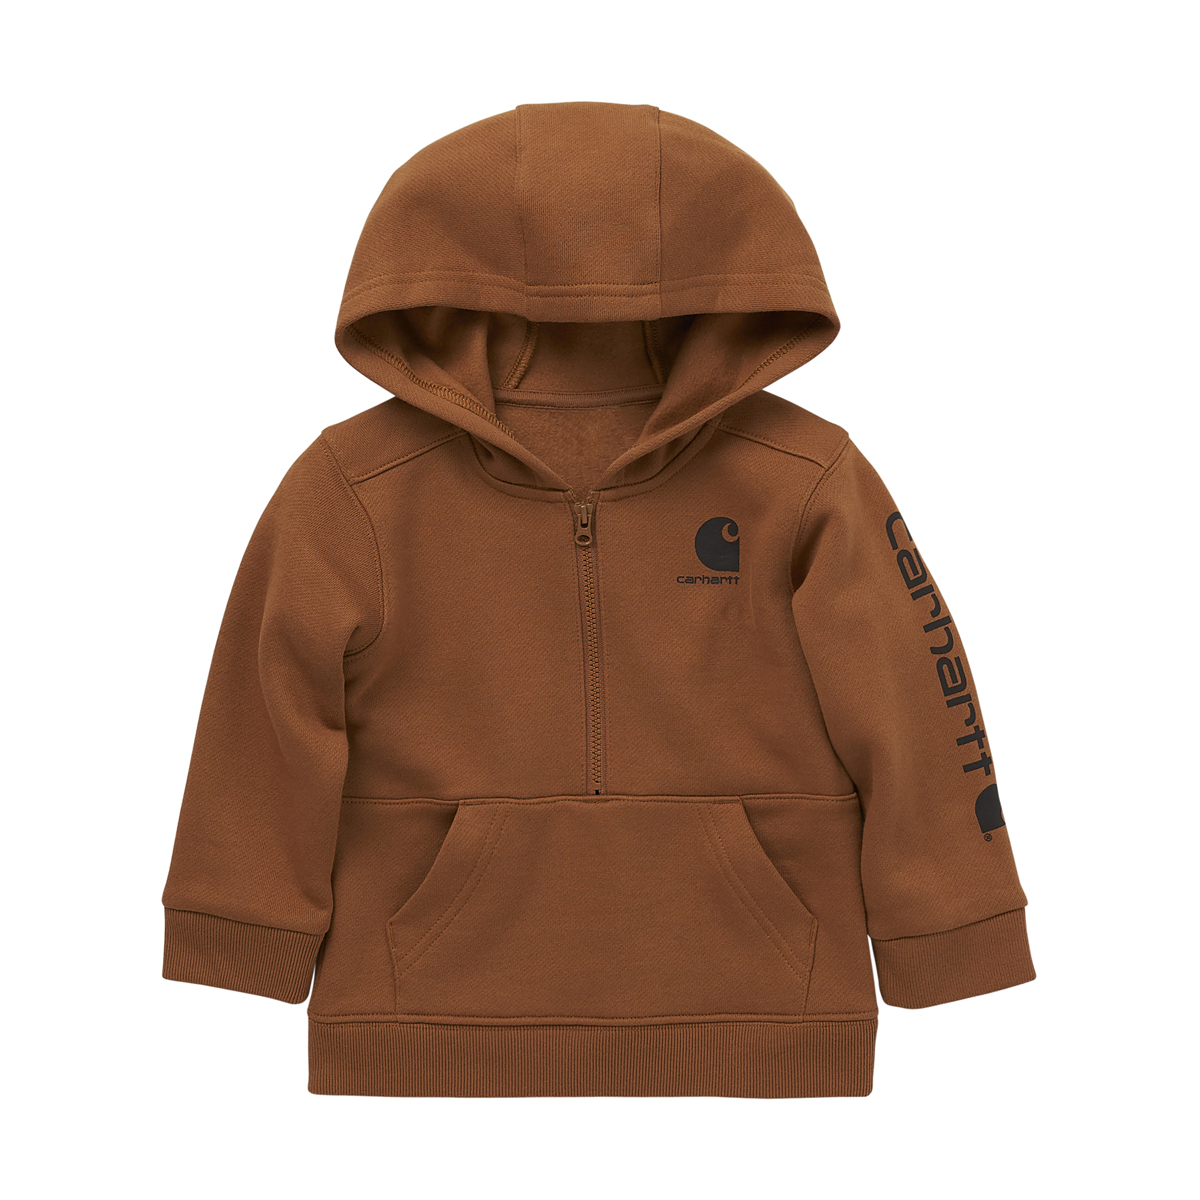 Carhartt Infant's Long-Sleeve Half-Zip Sweatshirt - Brown